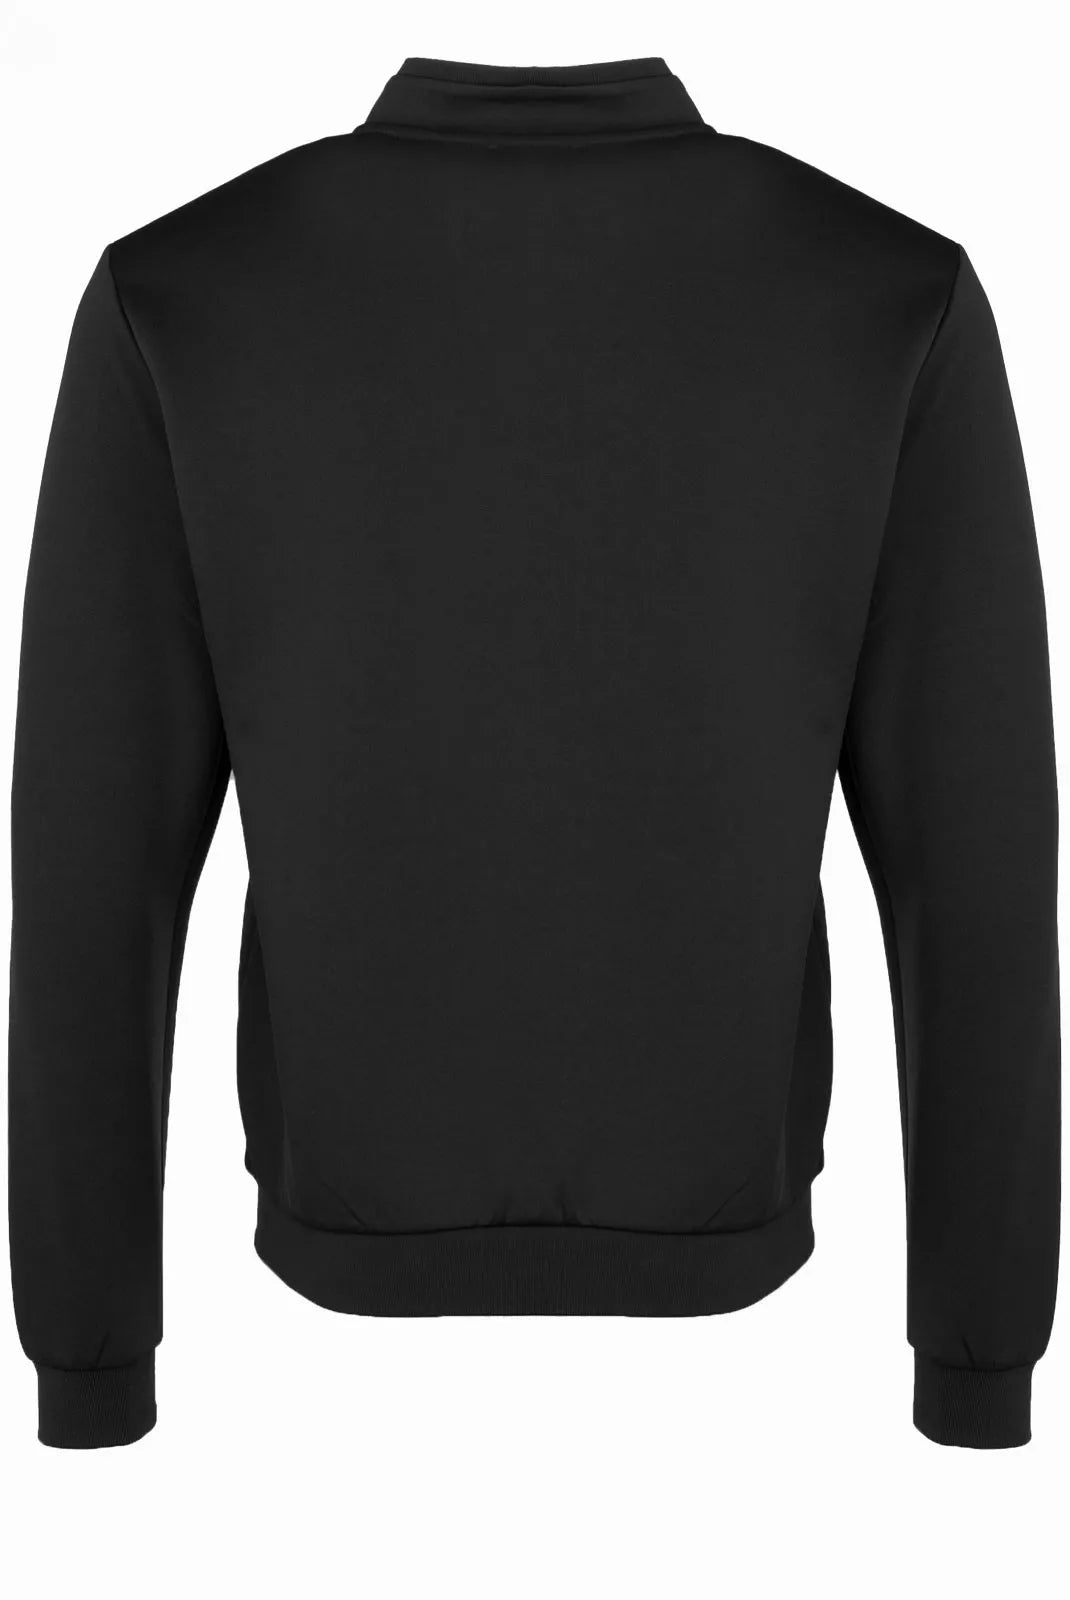 EA7 Emporio Armani sweatshirt / cardigan